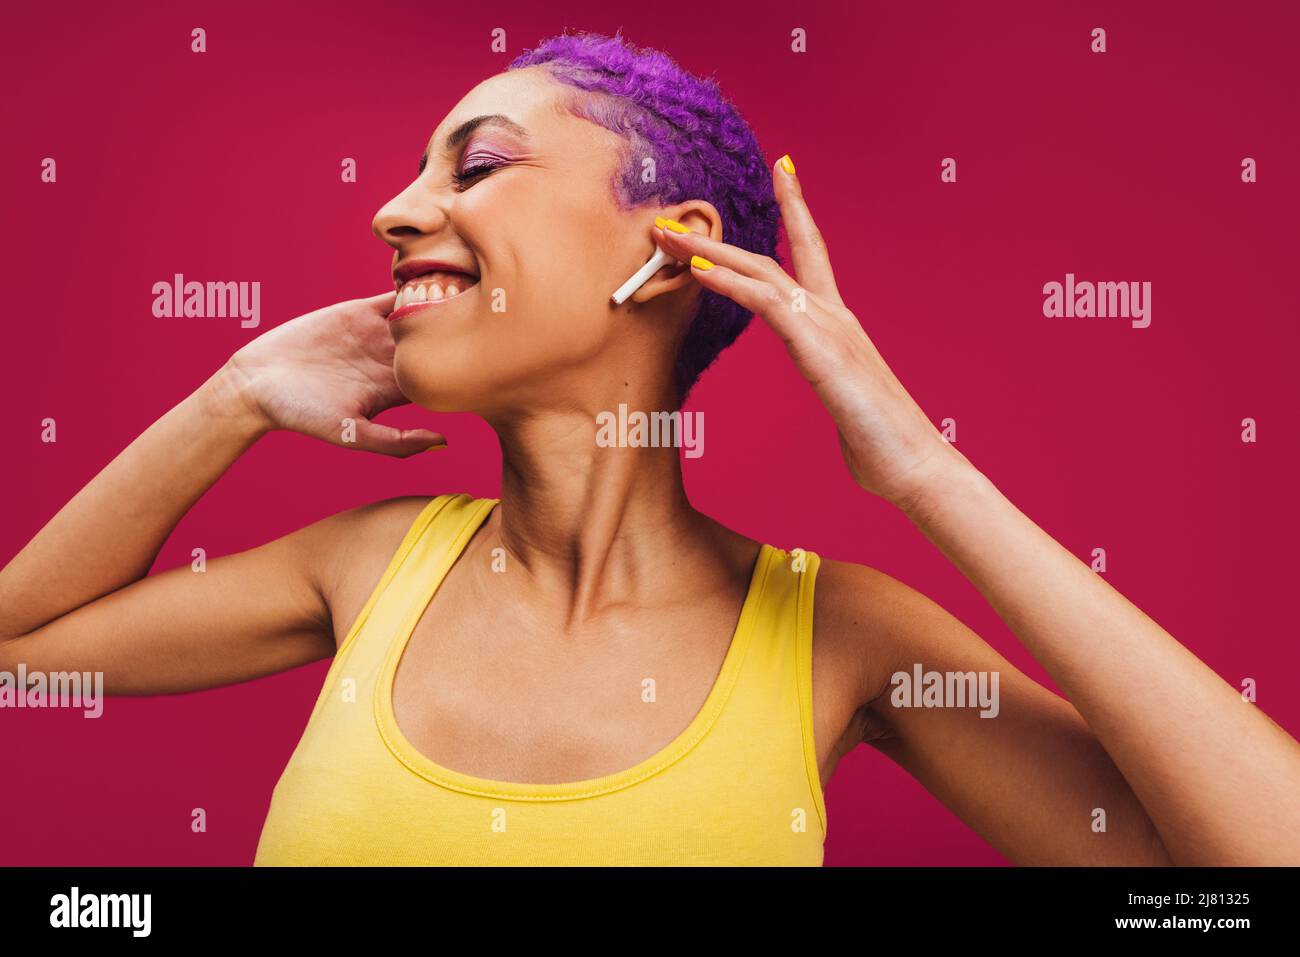 Nur fröhliche Musik. Eine unbeschwerte junge Frau berührt ihre kabellosen Ohrhörer, während sie ihr Lieblingslied hört. Frau mit lila Haaren lächelt fröhlich Stockfoto